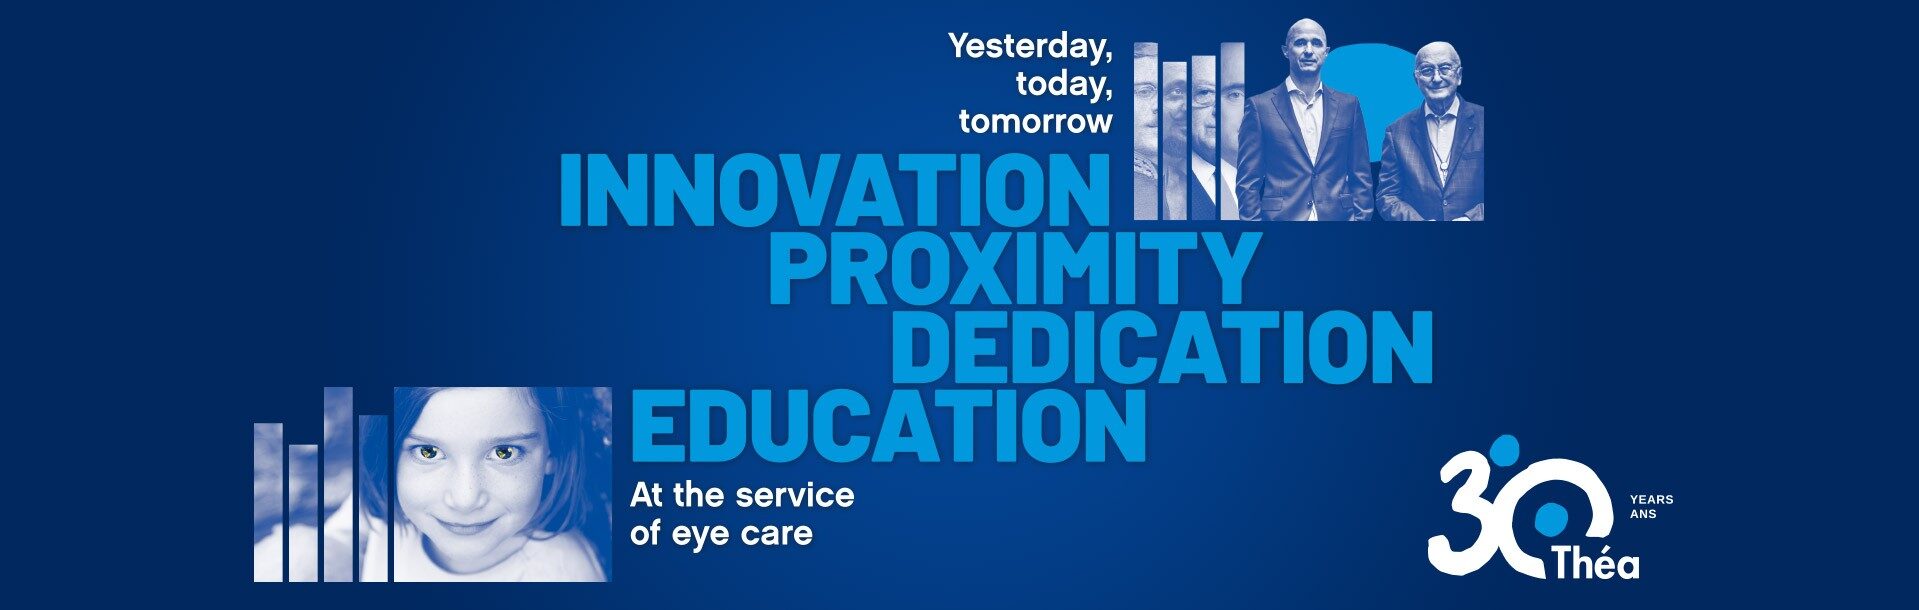 30 lat Thea innovation proximity dedication education